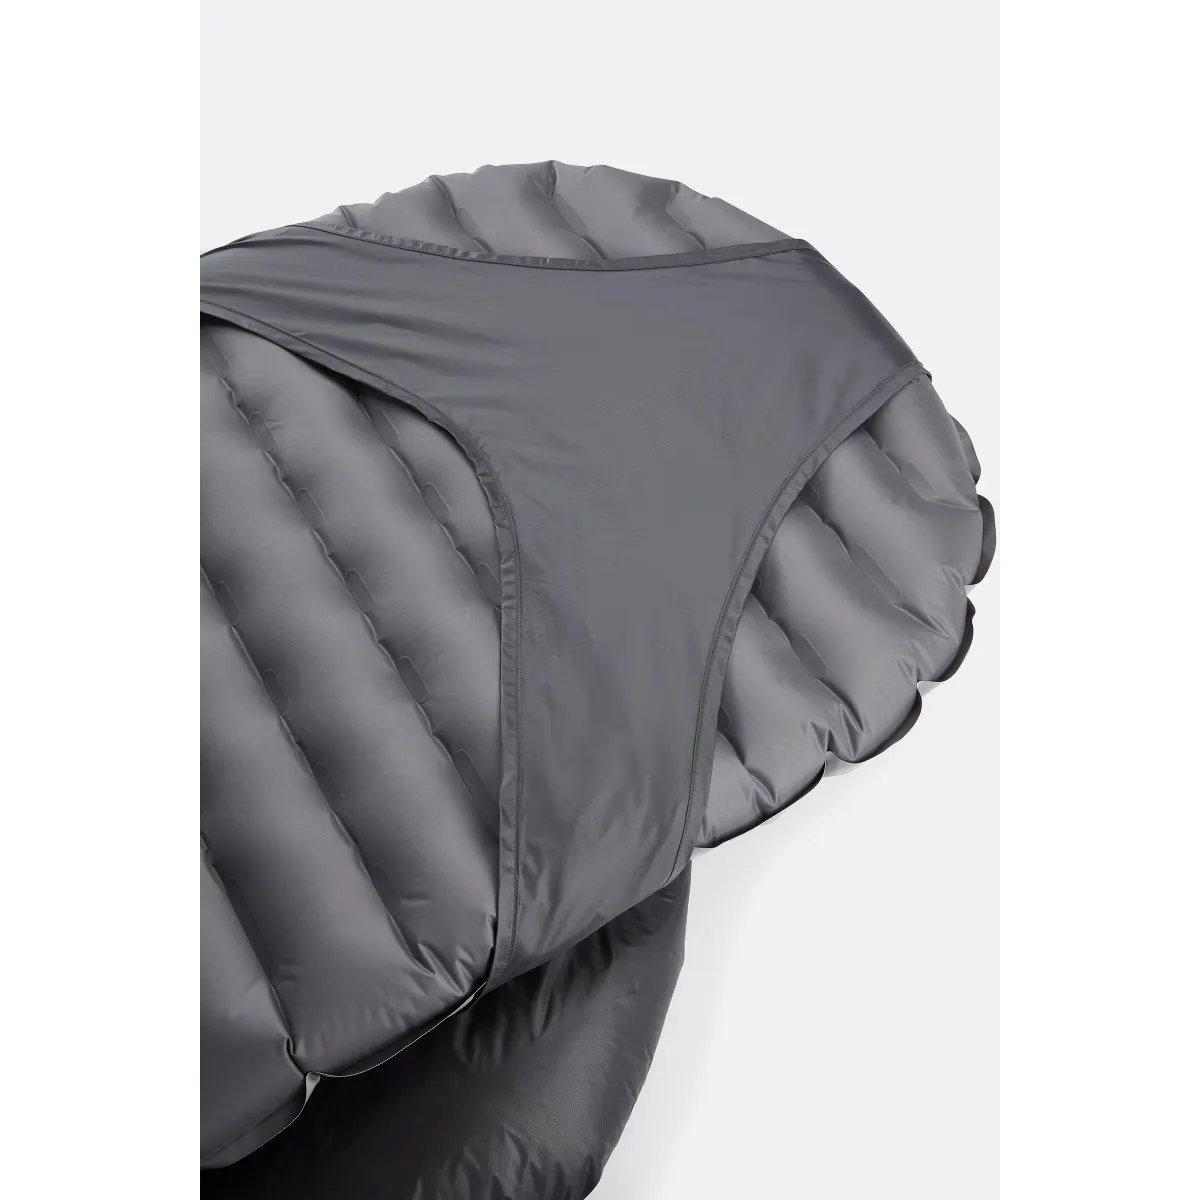 Rab Mythic Ultra 120 Modular Down Sleeping Bag - Grey